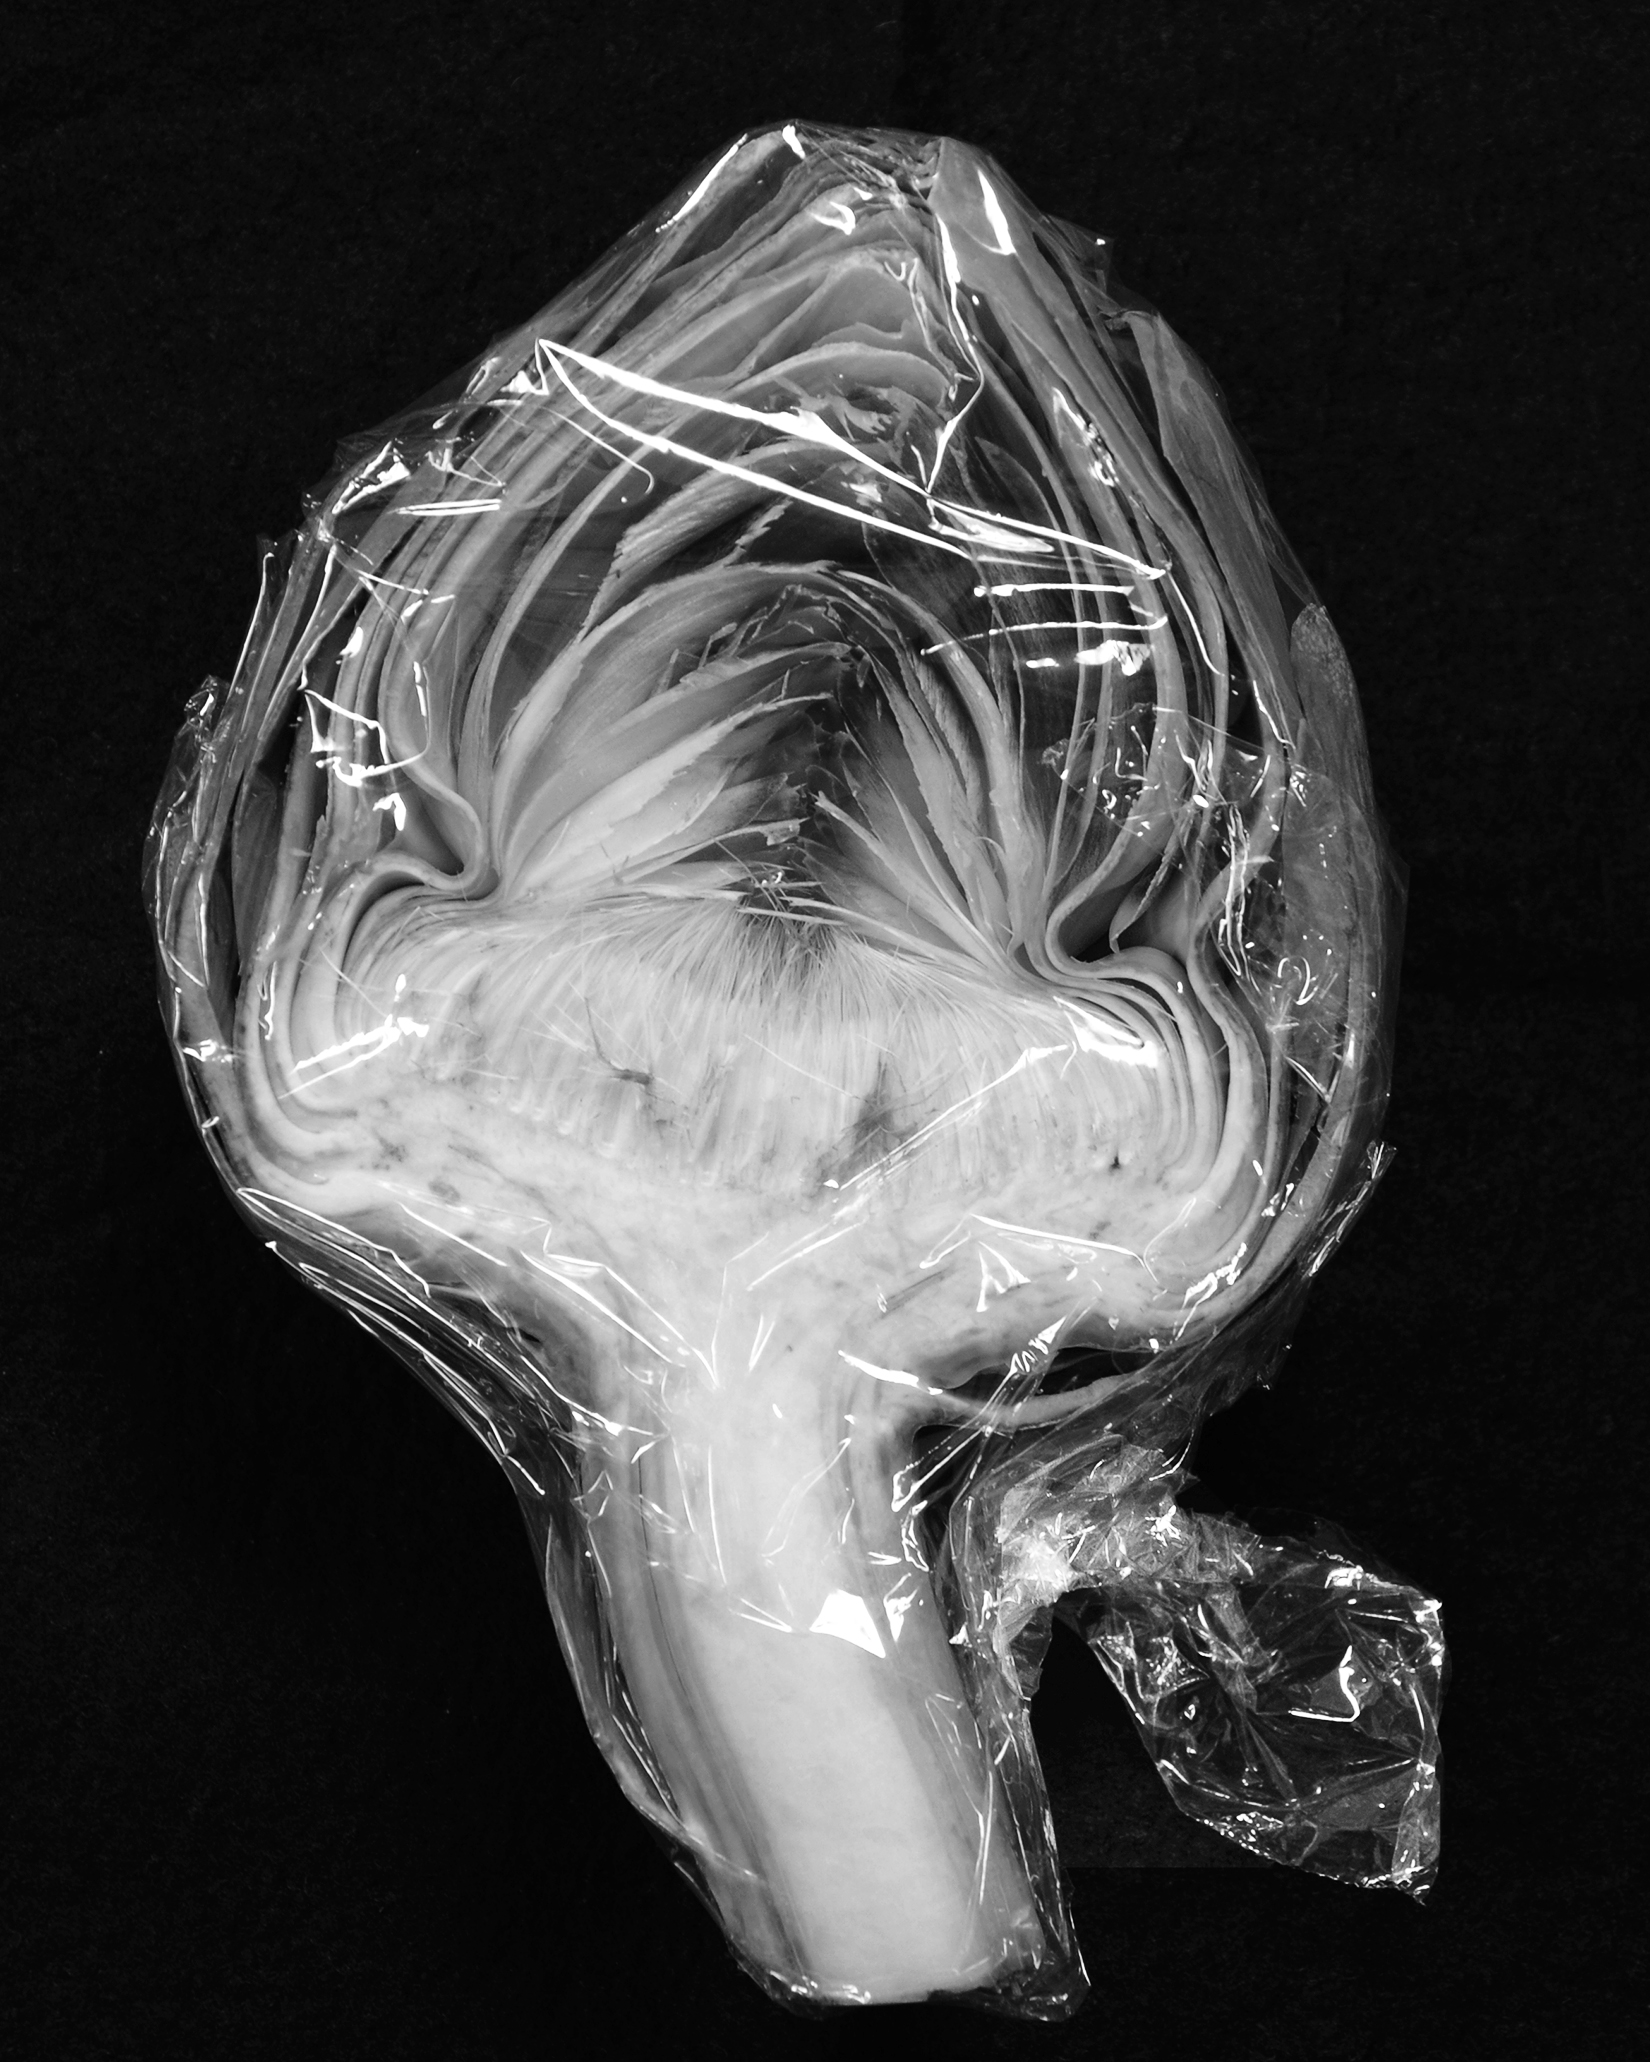 Image of an artichoke in plastic wrap